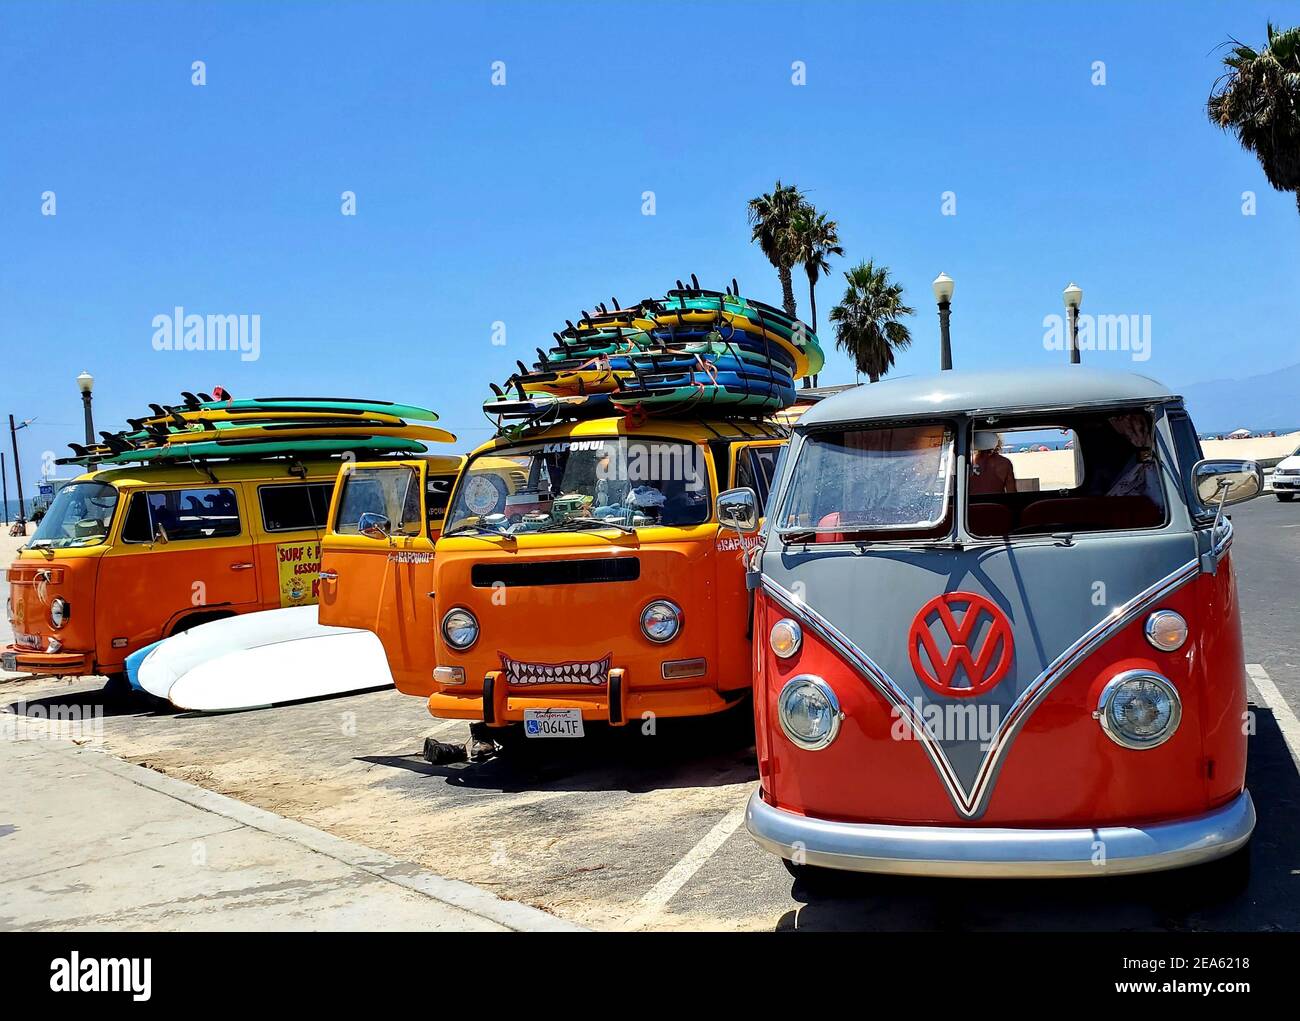 und Vw – -Fotos Alamy surf Auflösung hoher in beach -Bildmaterial bus